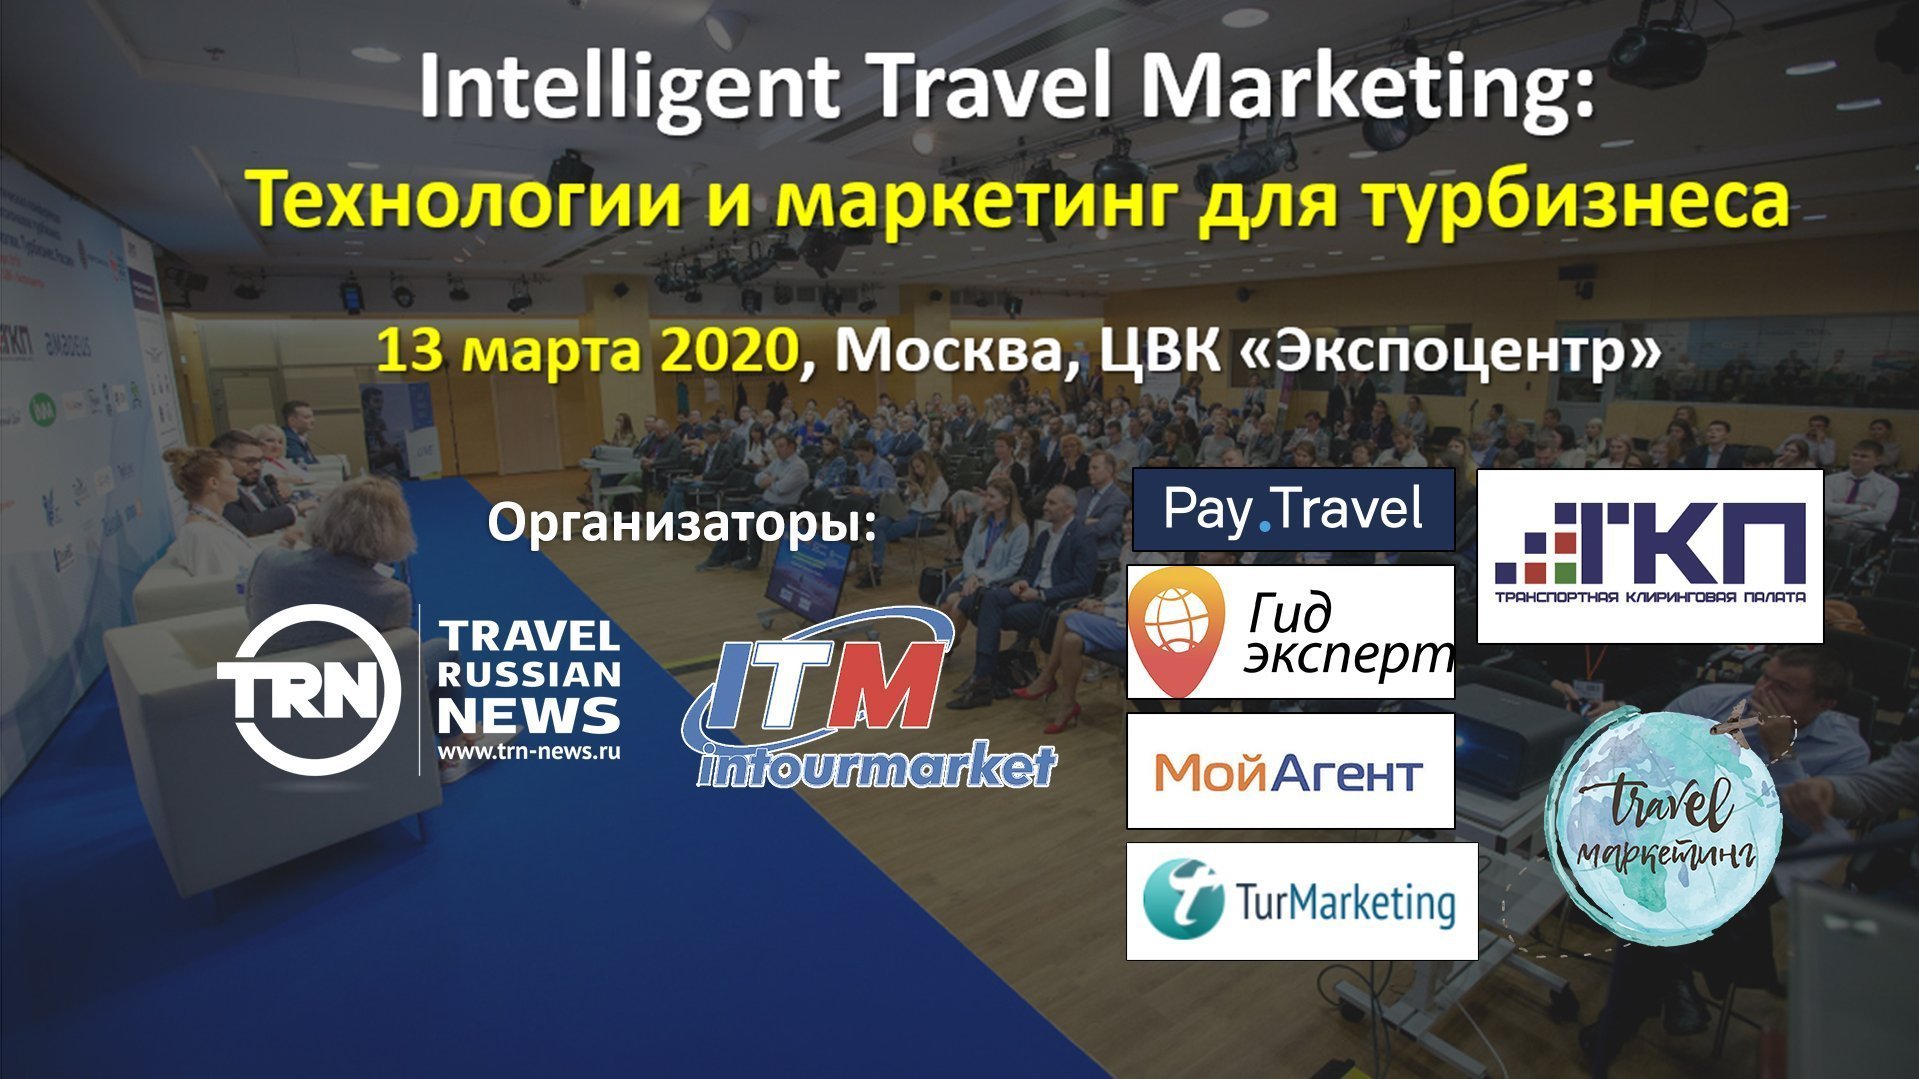 Основные тенденции маркетинга и технологий в турбизнесе обсудят на ITM 2020